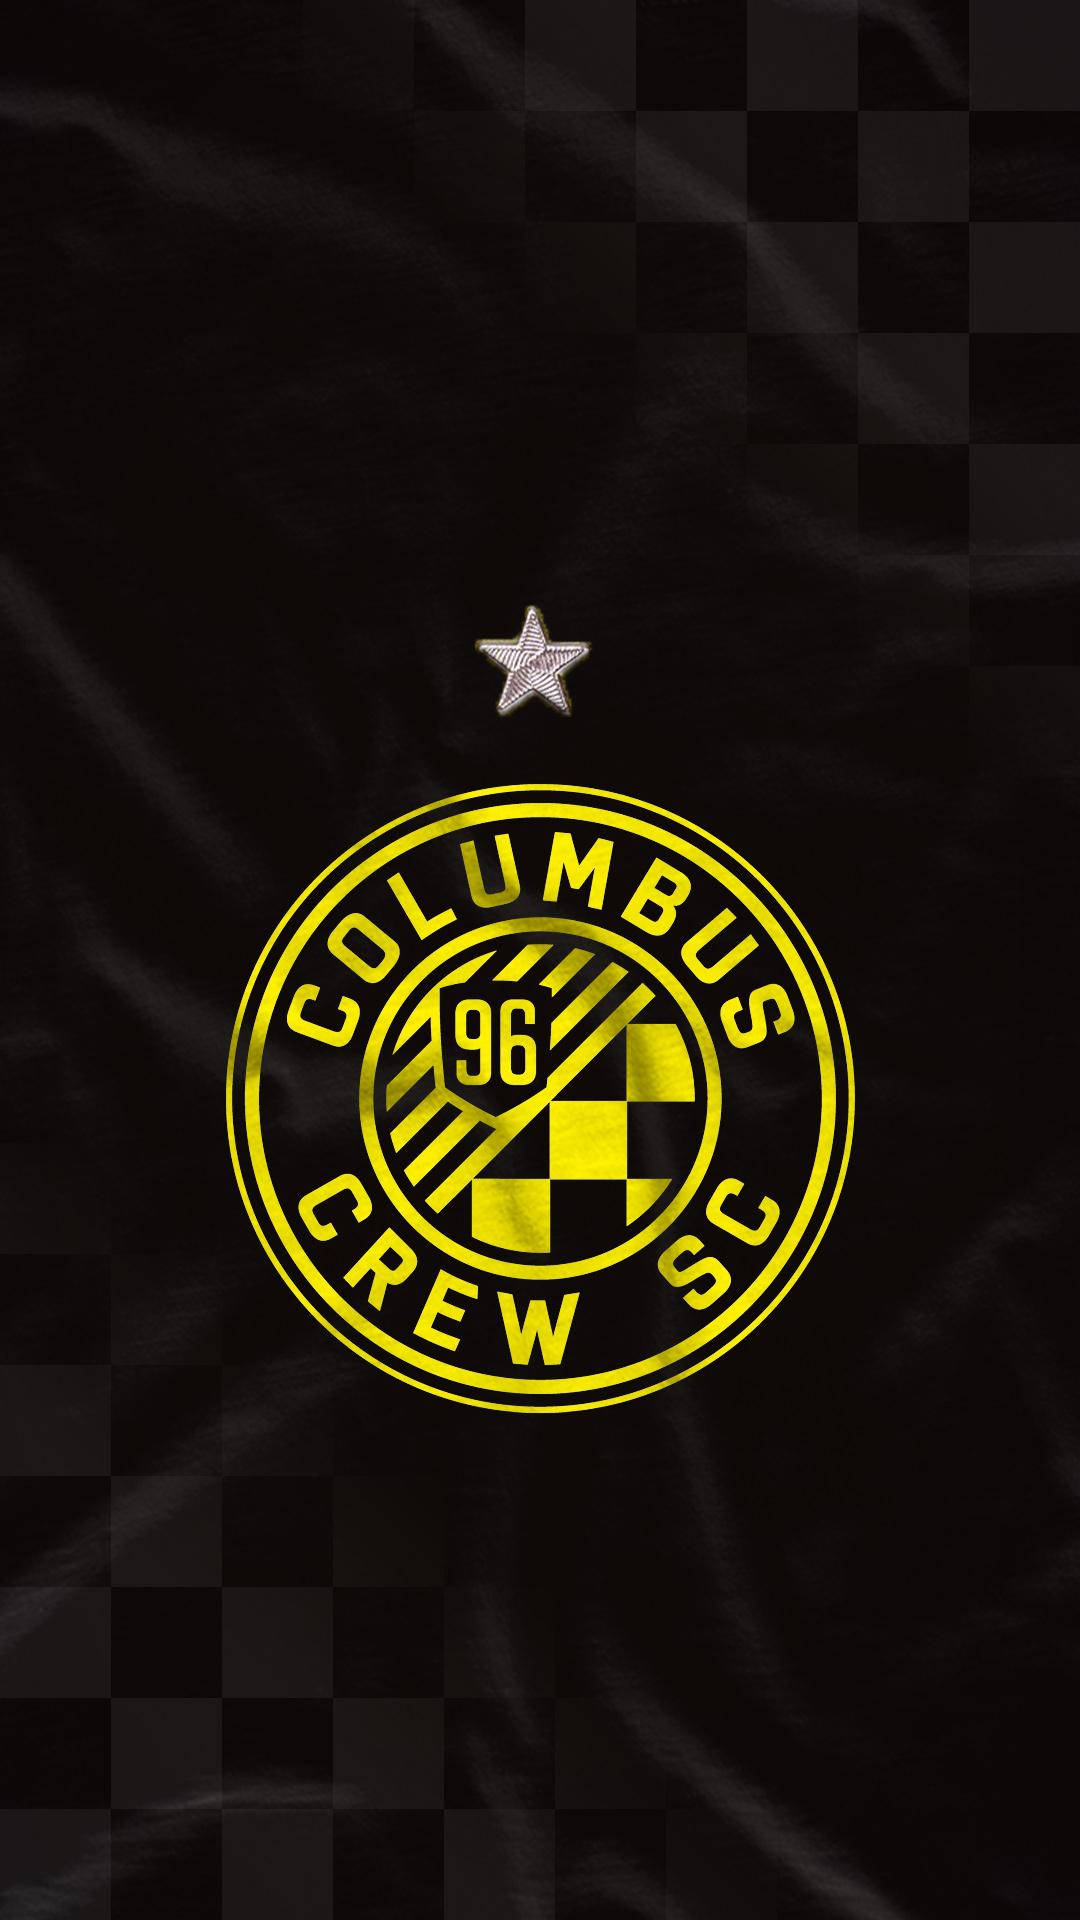 Detnya Logotypen För Columbus Crew. Wallpaper